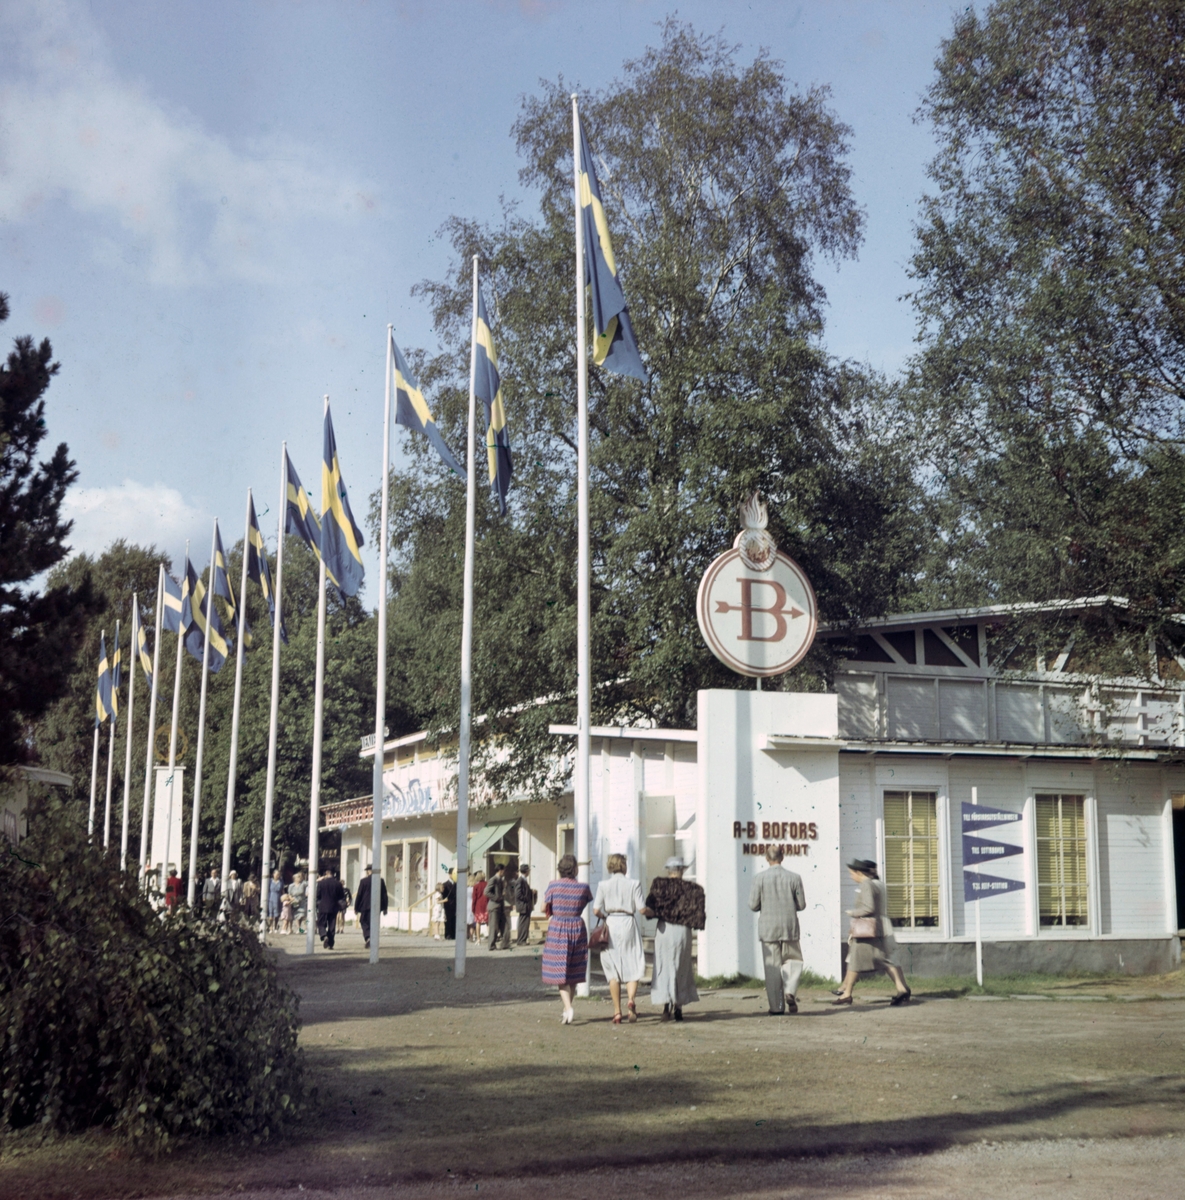 Färgbild från Utställningen "Värmland Visar" år 1947 i Stadsträdgården, Vänershov. Utställningen invigdes den 19 juni.